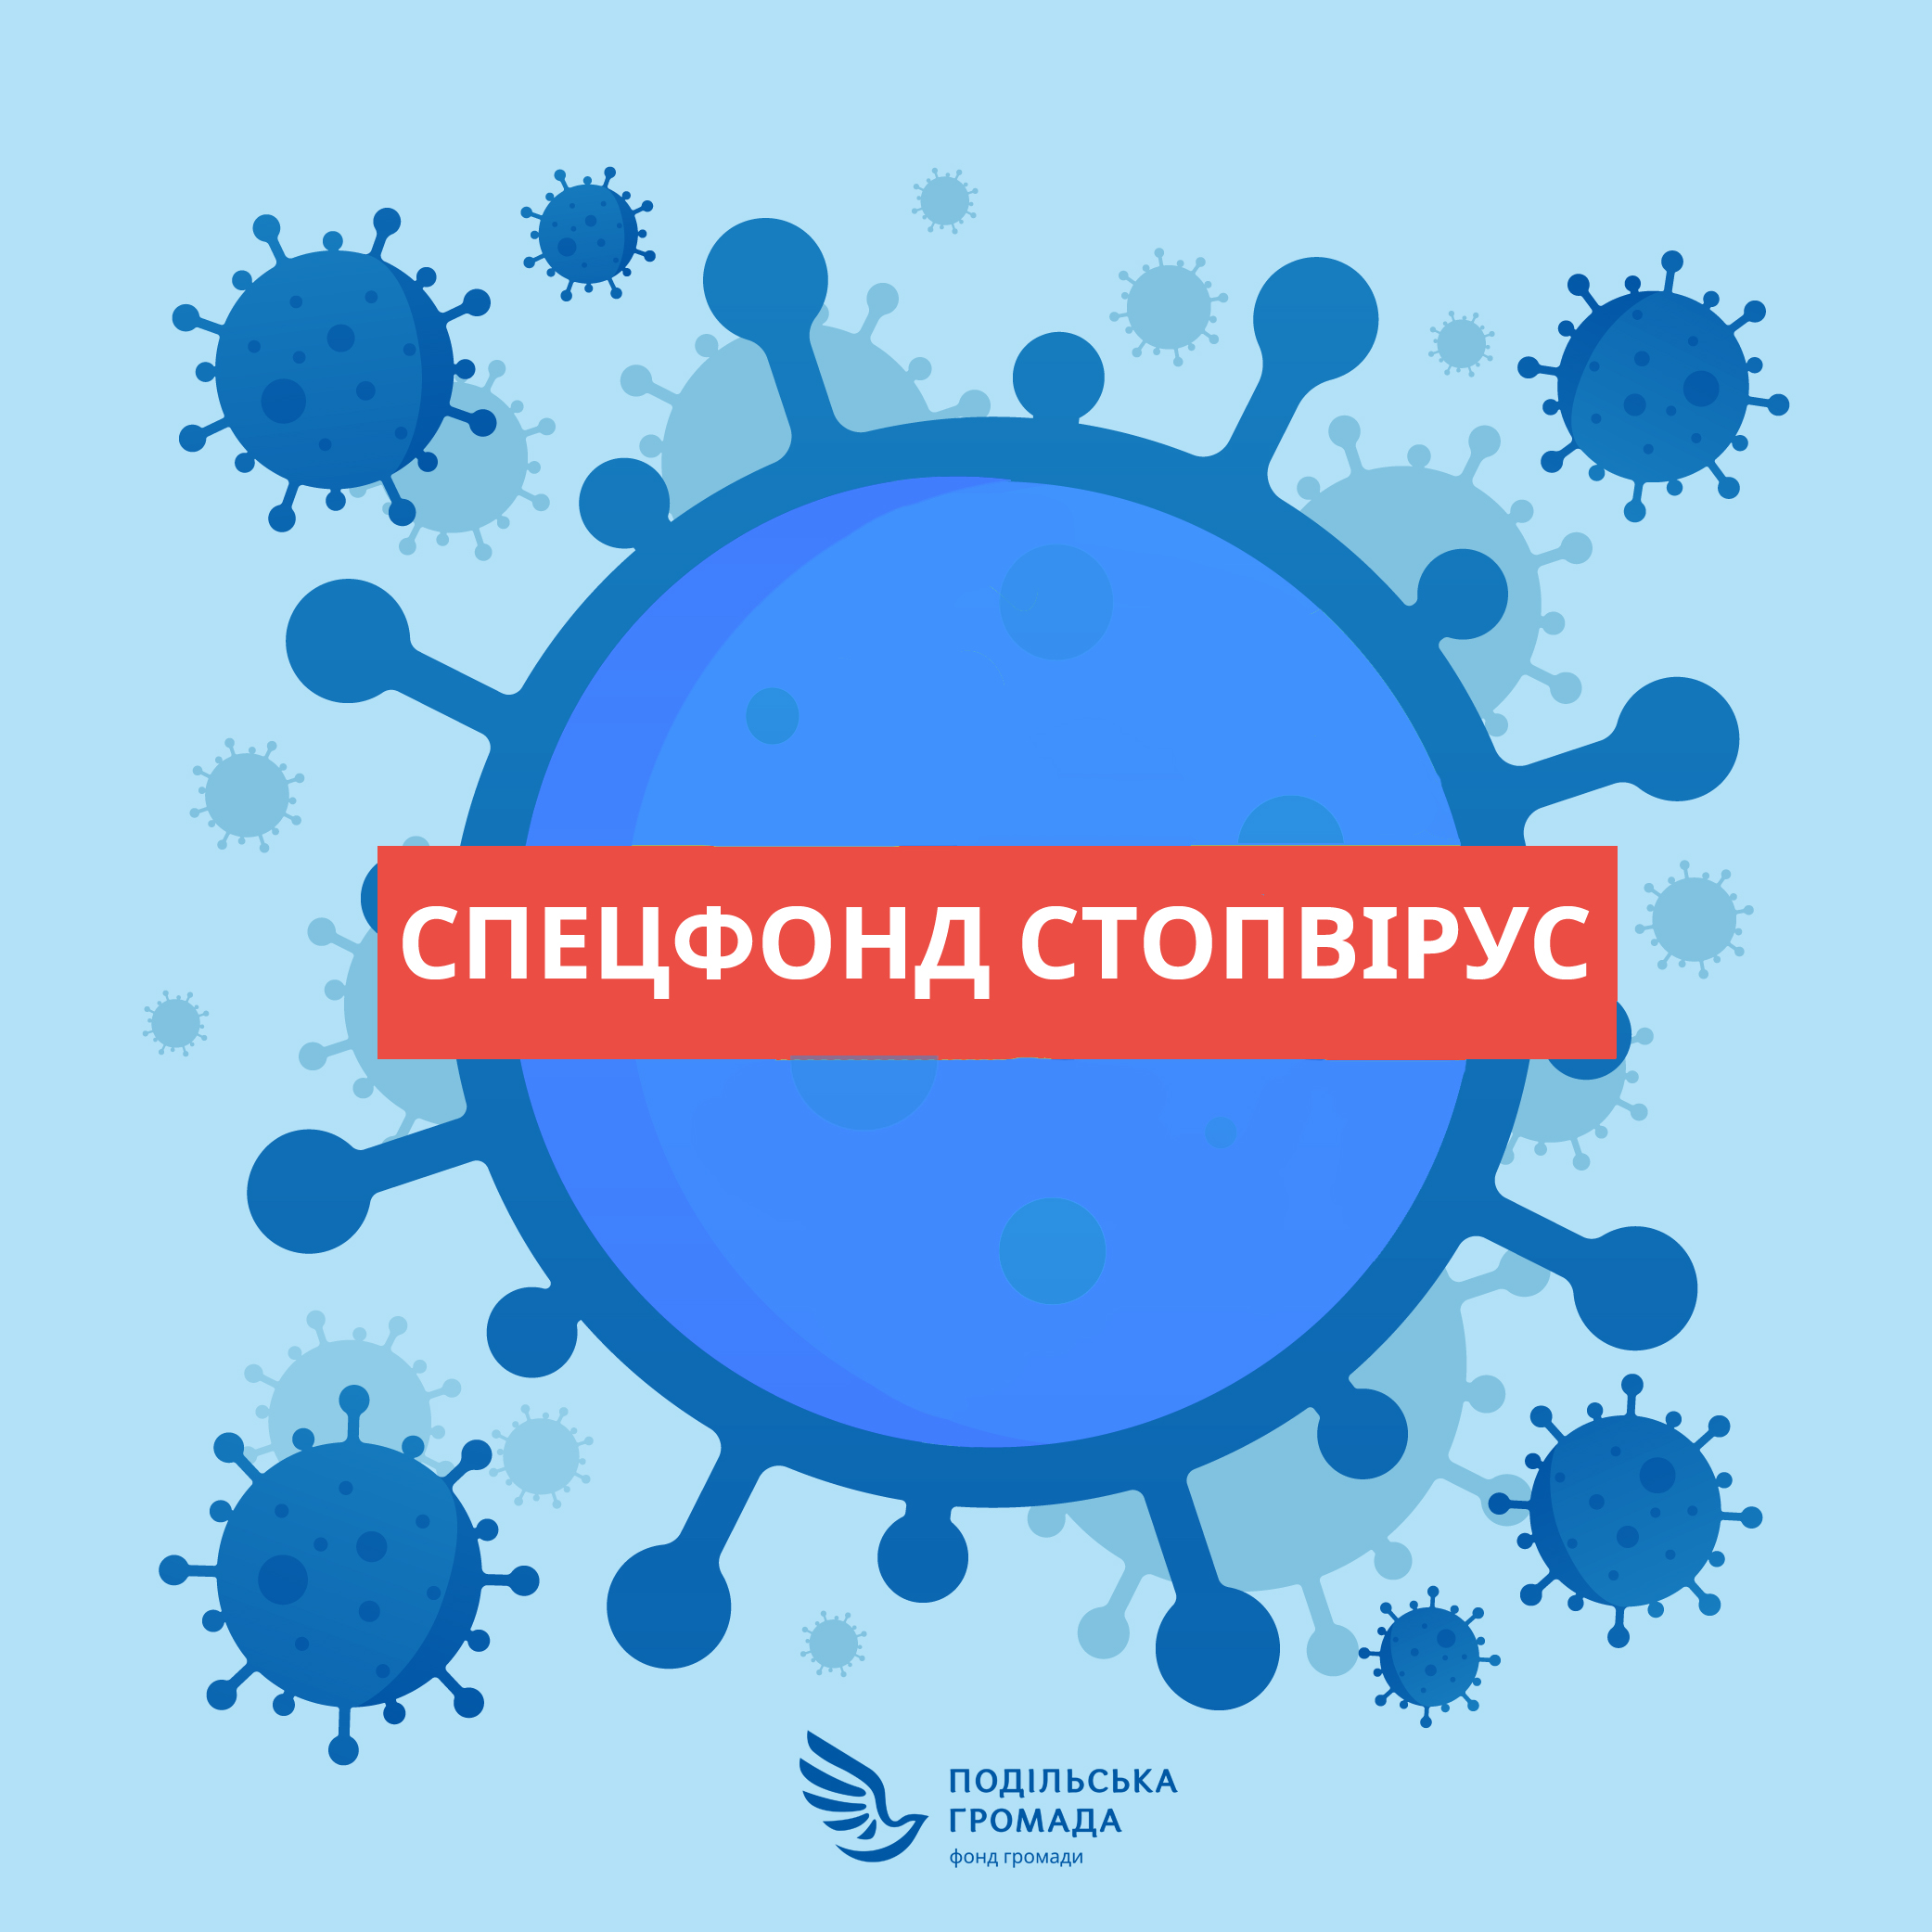 Спецфонд СтопВірус: вінничан закликають долучатися до збору коштів на боротьбу з коронавірусом